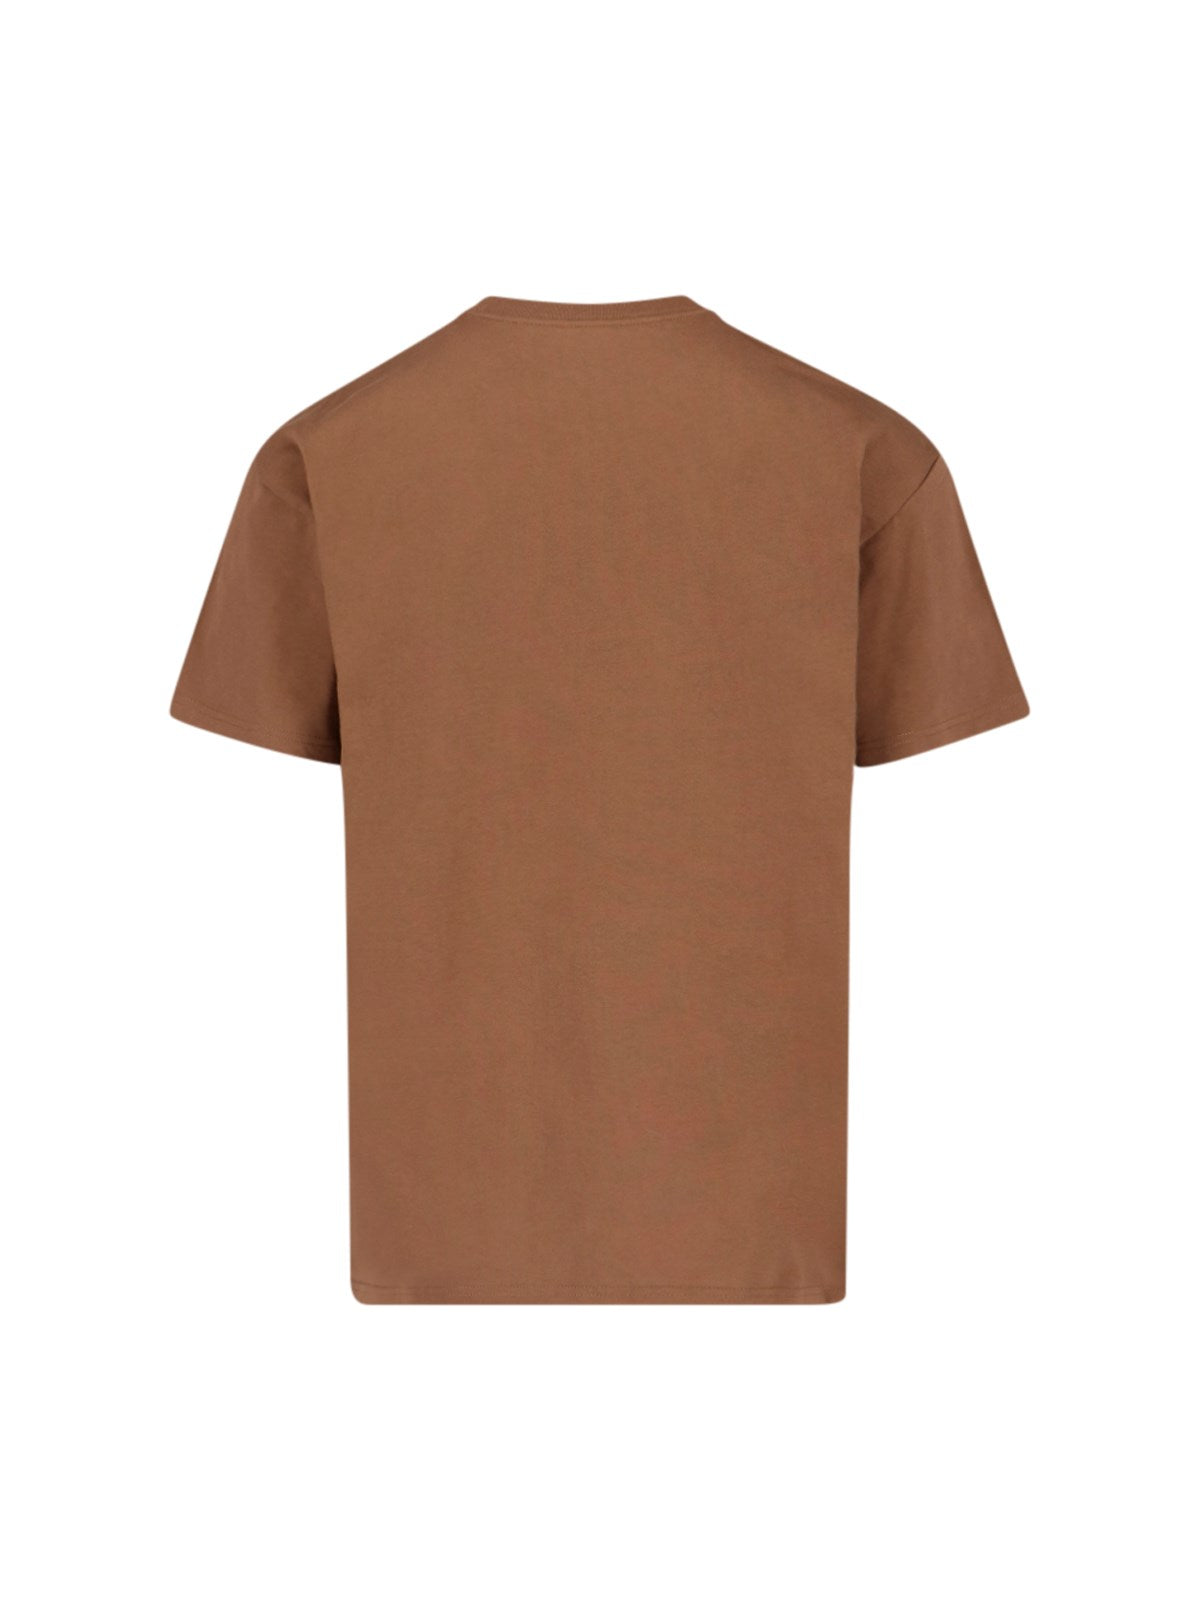 carhartt wip t-shirt "chase"-t-shirt-Carhartt WIP-t-shirt "chase" carhartt wip, in cotone beige, girocollo, maniche corte, logo ricamato petto, orlo dritto. codice prodotto i0263911r0xx composizione: 100% cotone dimensioni/vestibilità: regolare made in: bangladesh - Dresso